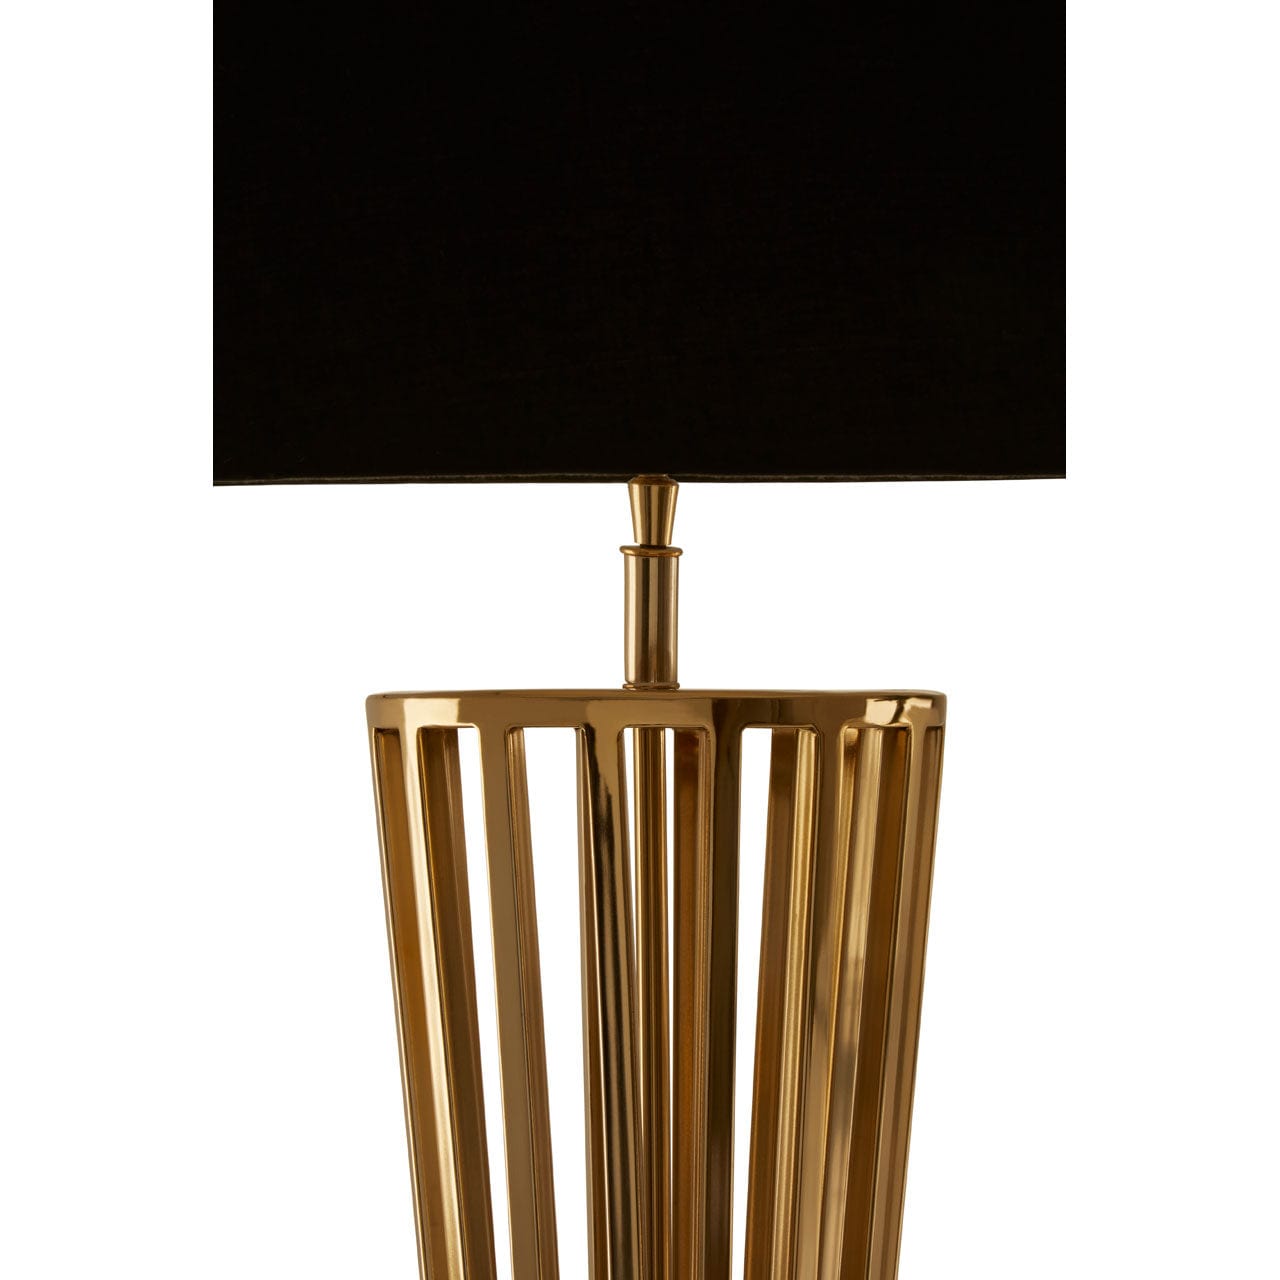 Hamilton Interiors Lighting Skye Gold Finish / Twisted Base Floor Lamp House of Isabella UK